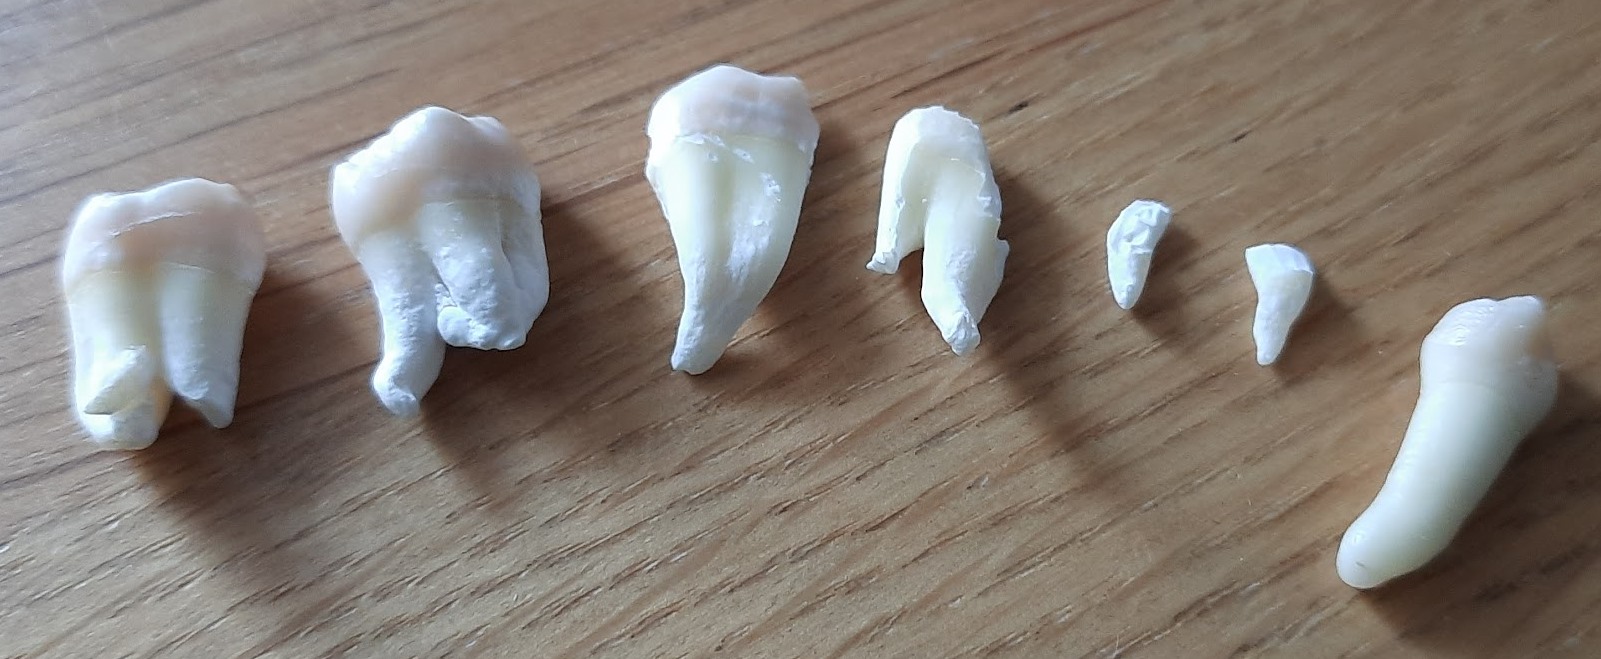 Все зубы, которые сохранились, чистенькие, кроме одного. Я немного передержал некоторые из них в белизне.